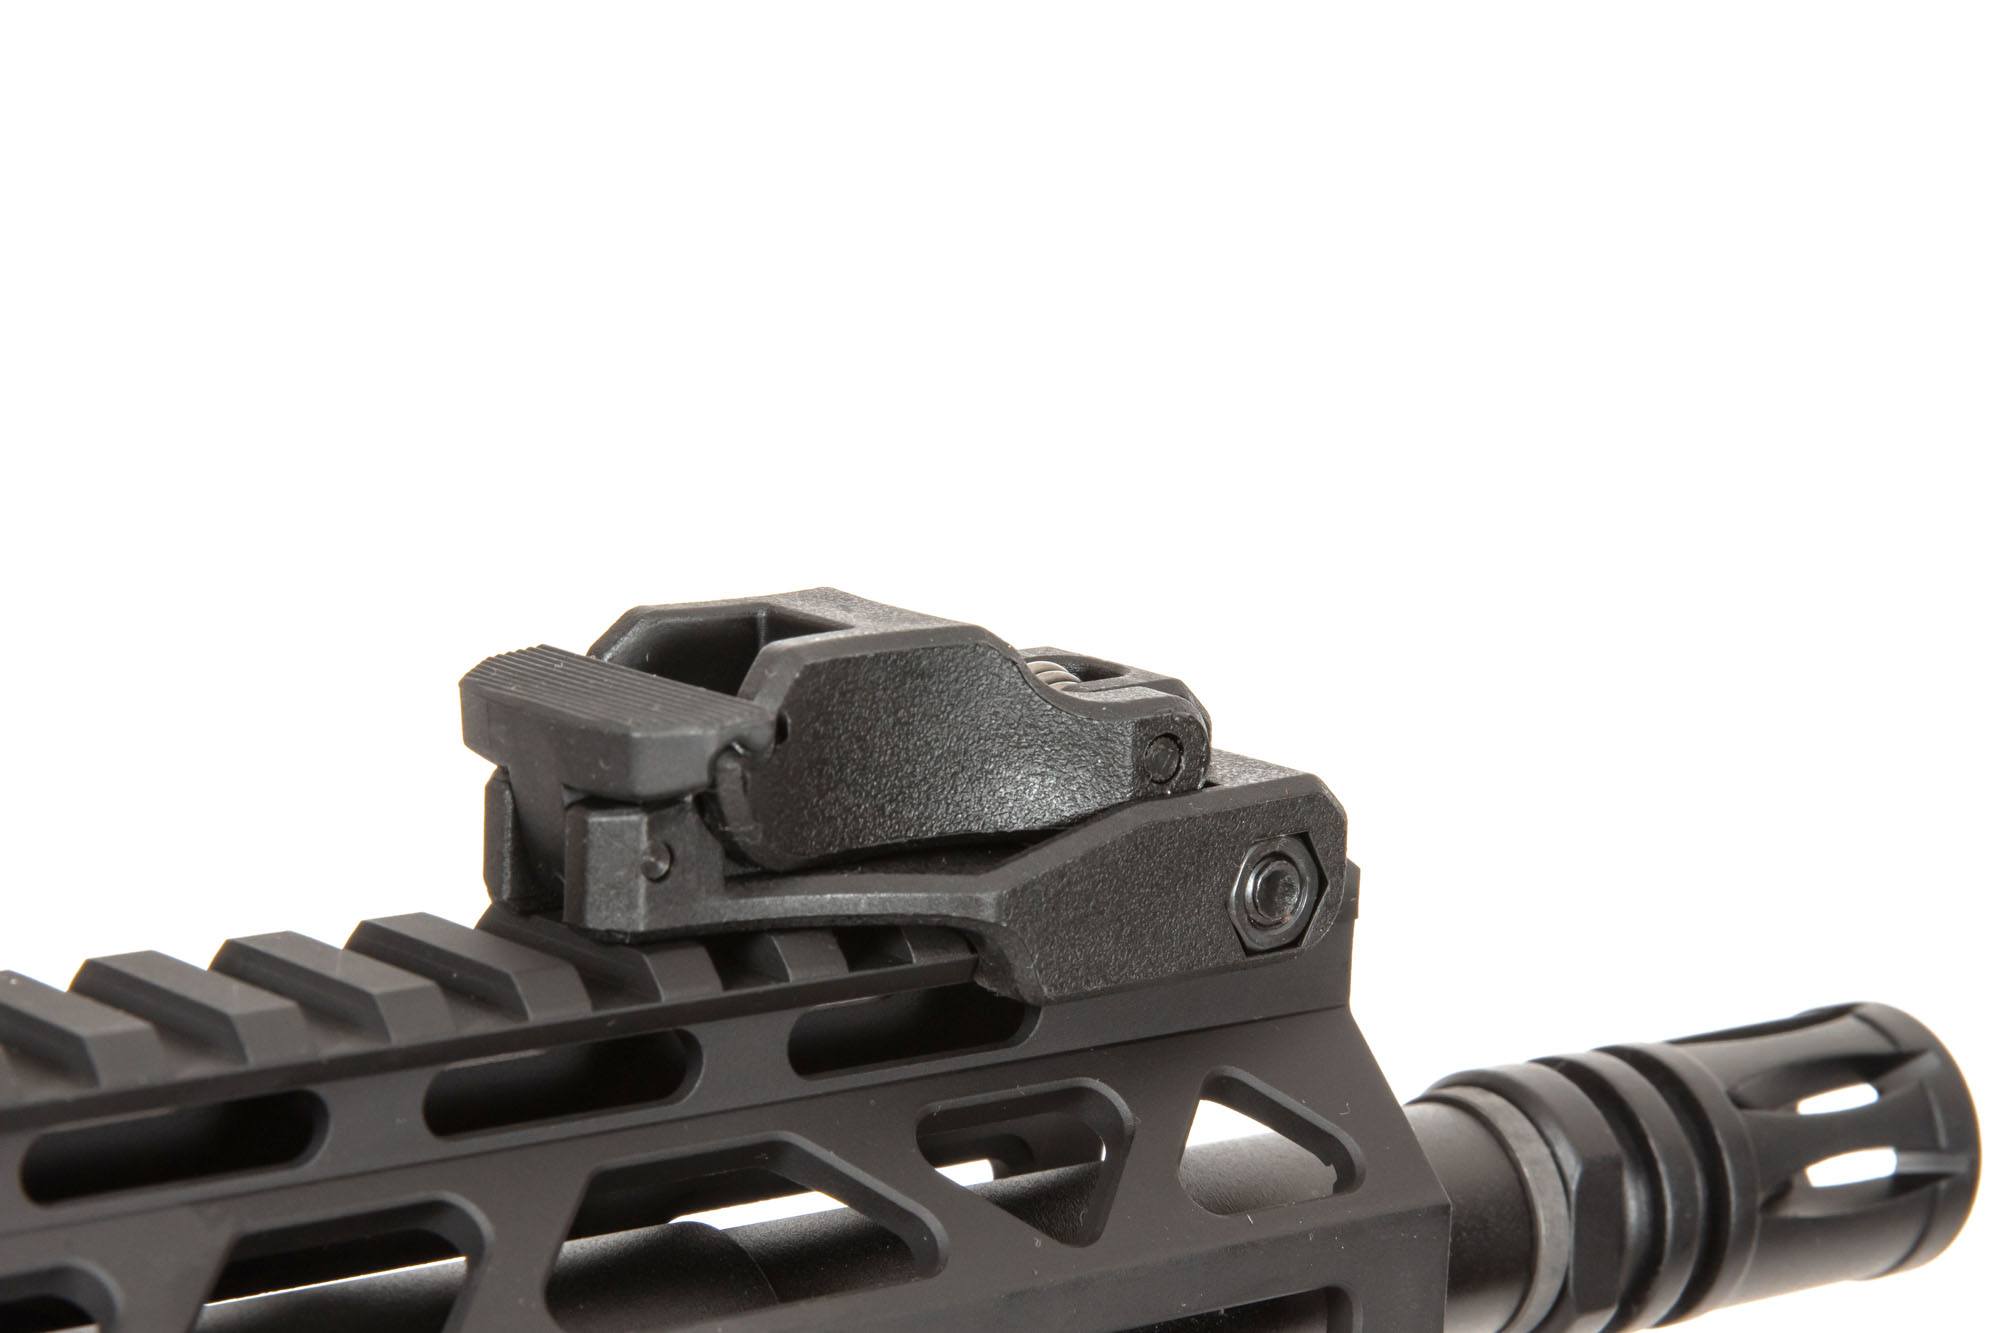 RRA SA-E25 EDGE ™ Carbine Replica - Black by Specna Arms on Airsoft Mania Europe